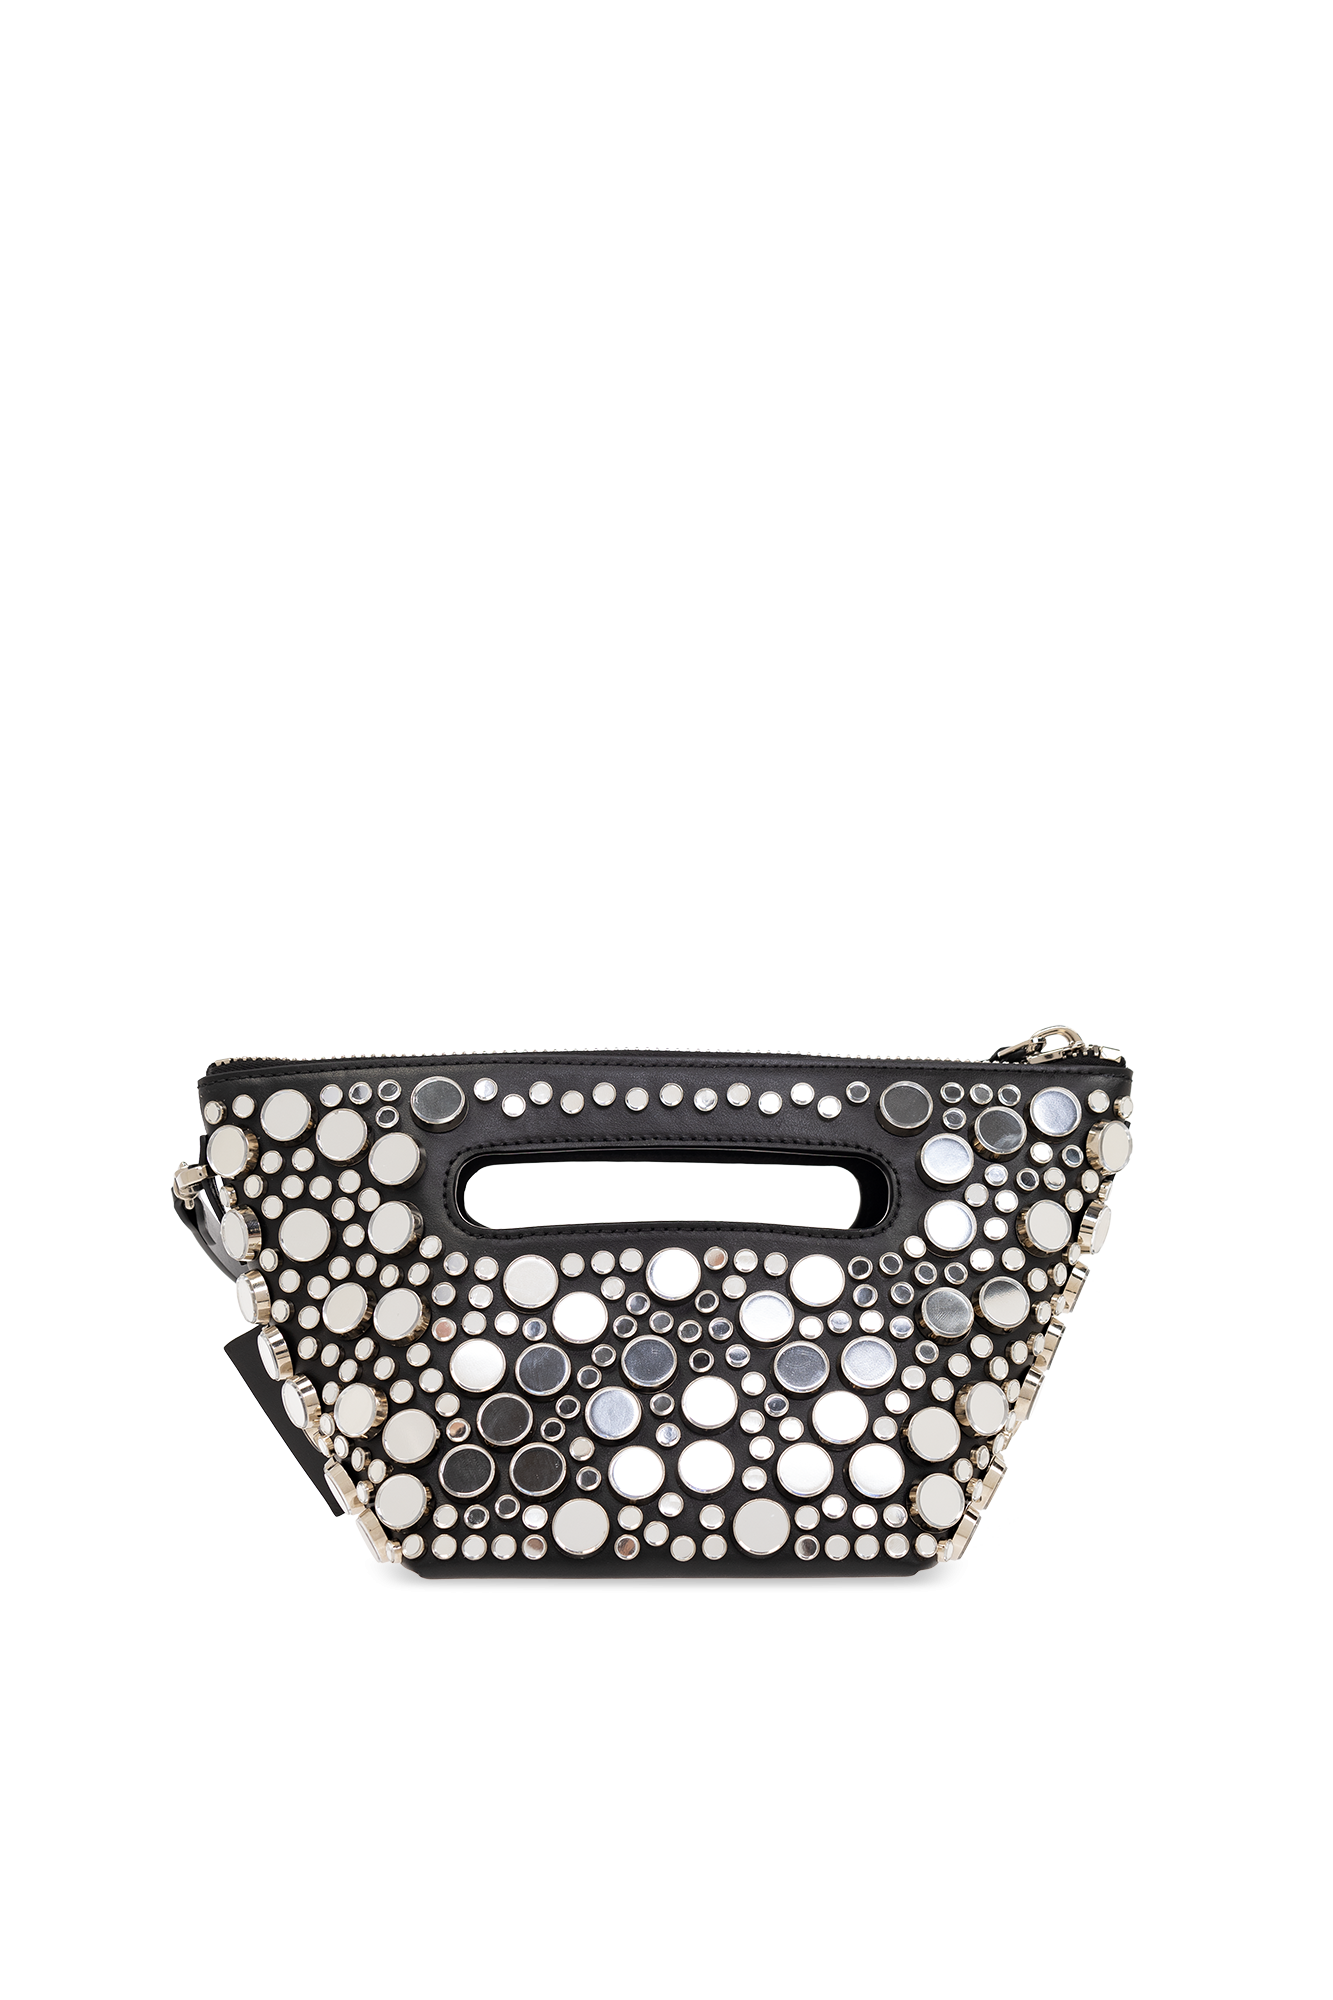 The Attico ‘Via Dei Giardini 15’ leather handbag